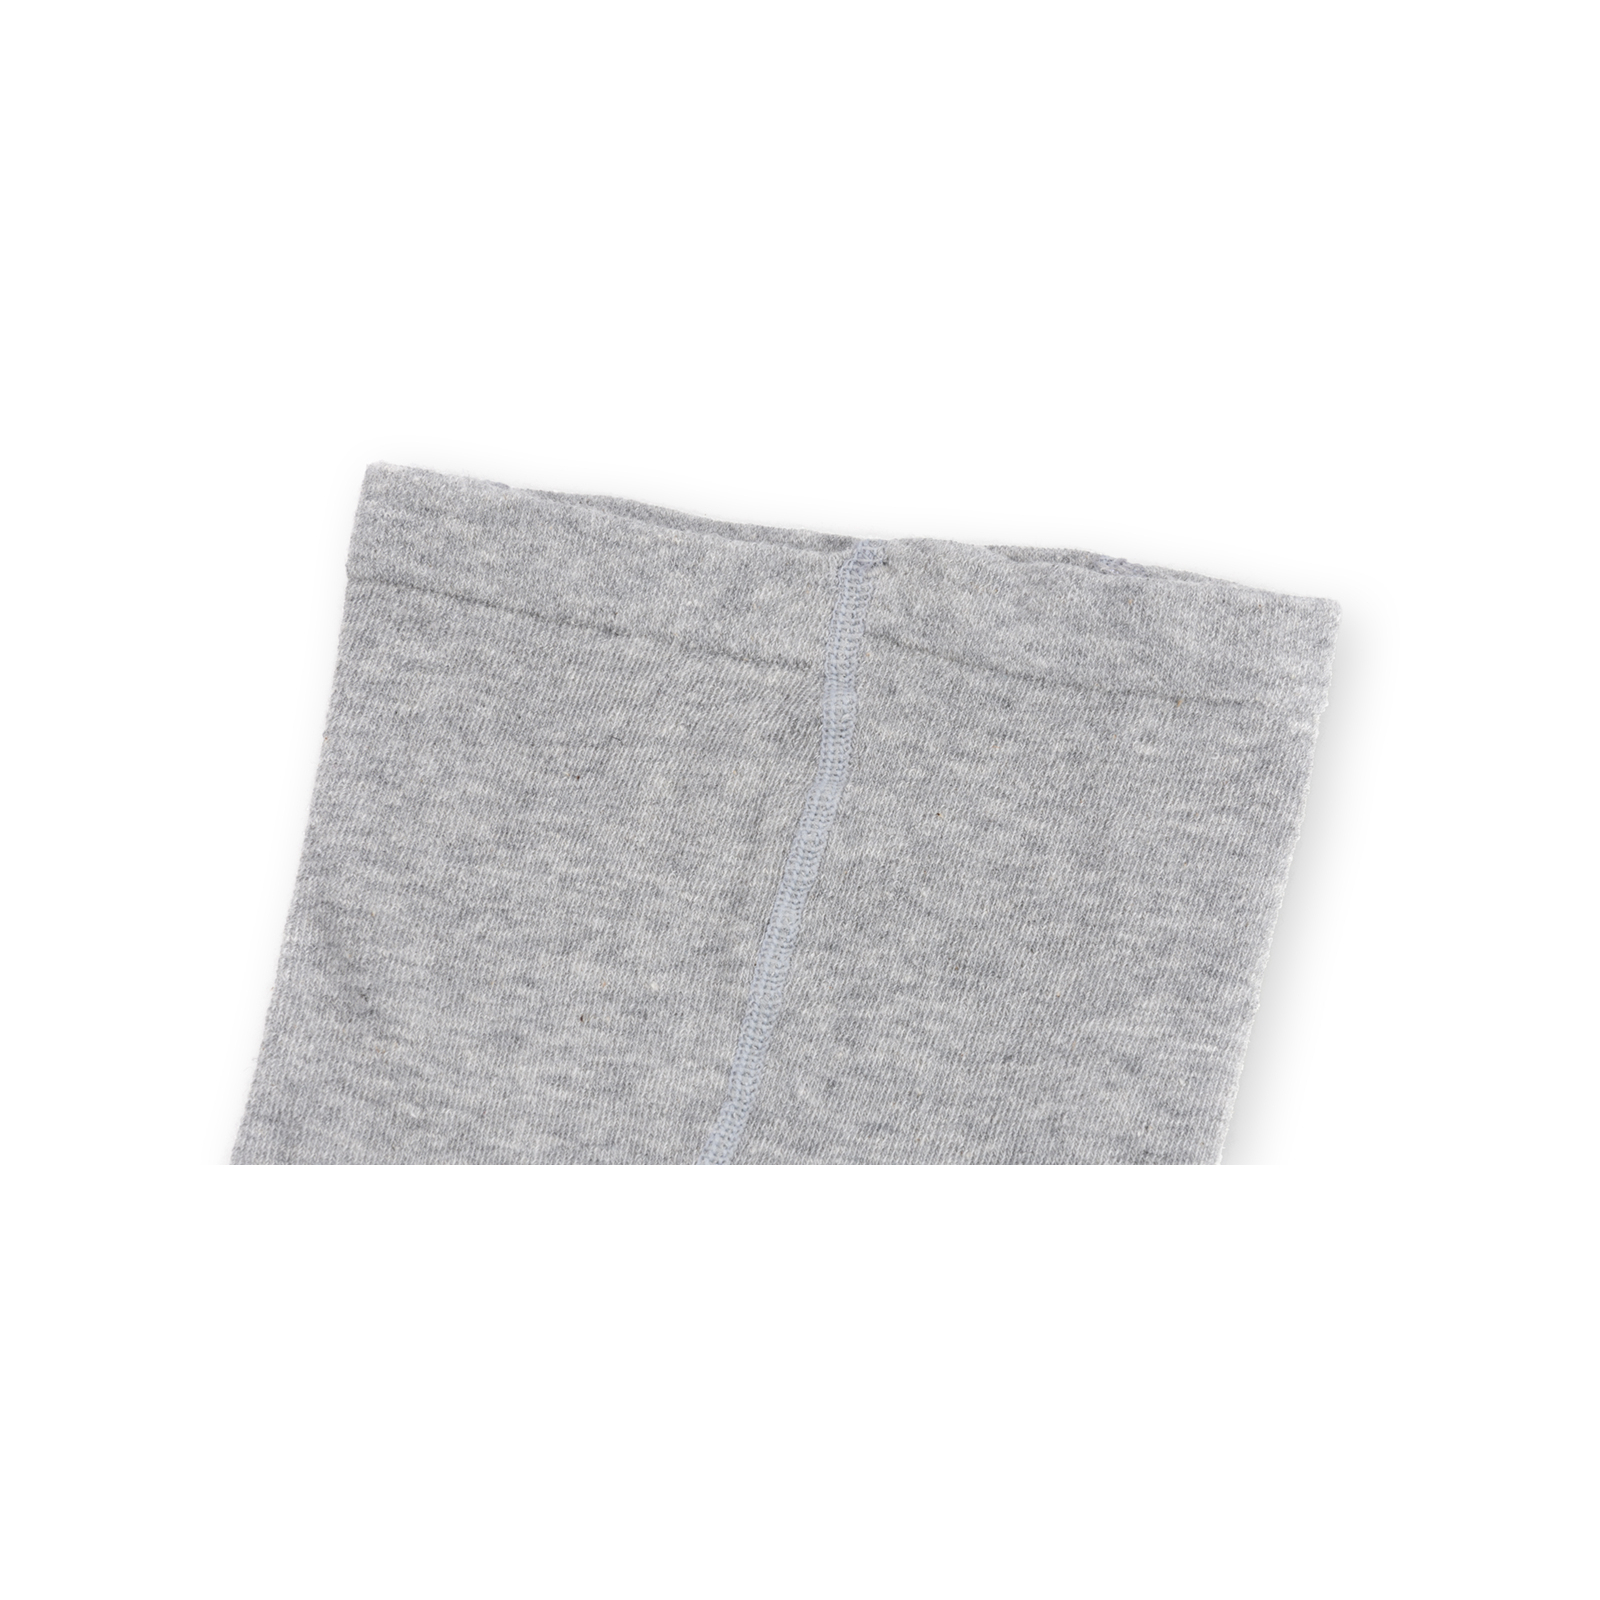 Колготки UCS Socks "Tiger" серые меланж (M0C0301-0857-3B-graymelange) изображение 3